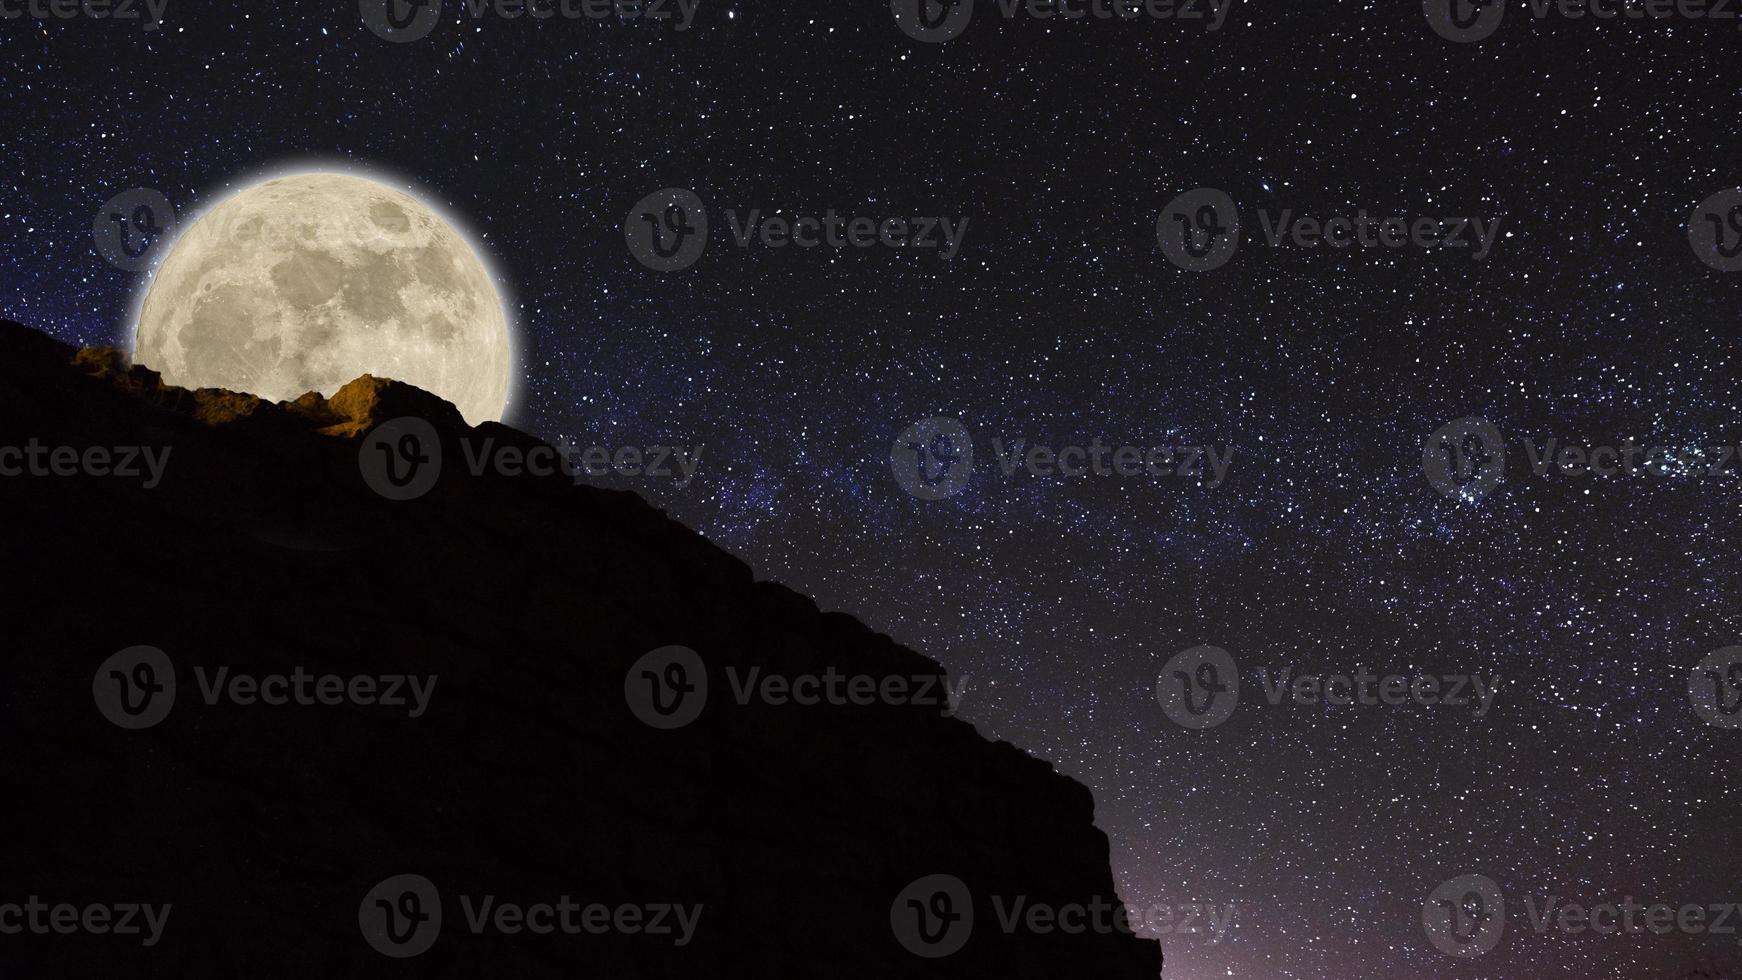 Low-Light- und Langzeitbelichtungsfotografie des Nachthimmels mit einem Berg auf der rechten Seite. körnige Textur und weichgezeichneter Hintergrund. nachthimmel milchstraße mit vollmond und universumskonstellation im ba foto